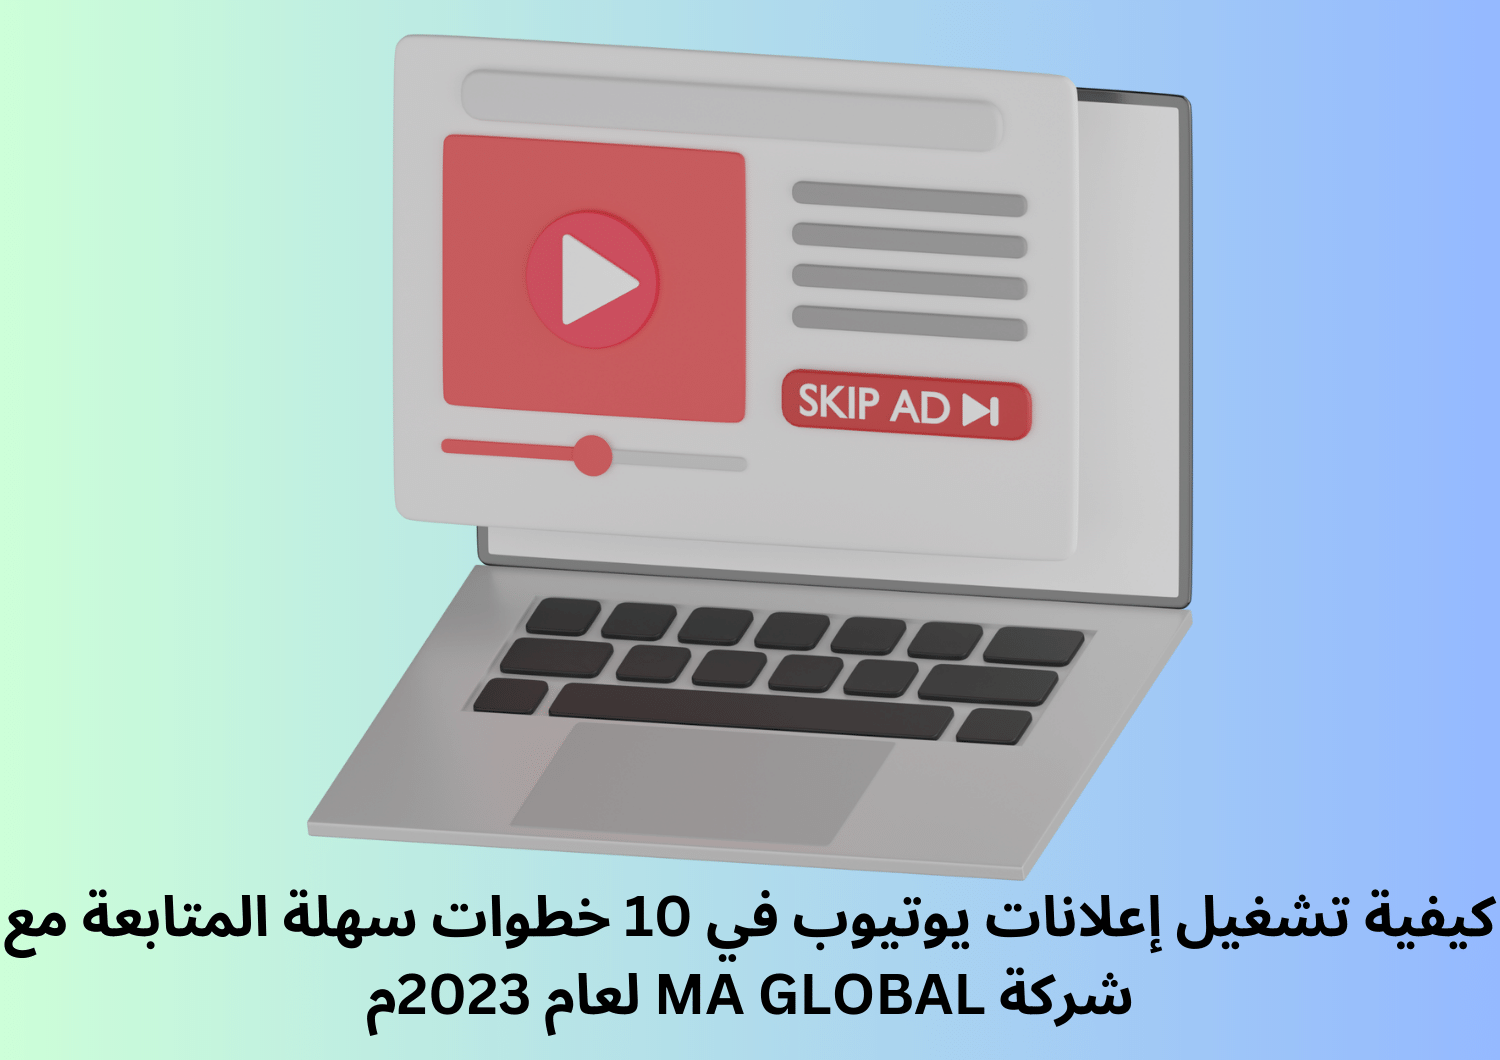 كيفية تشغيل إعلانات يوتيوب في 10 خطوات سهلة المتابعة مع شركة MA GLOBAL لعام 2023م